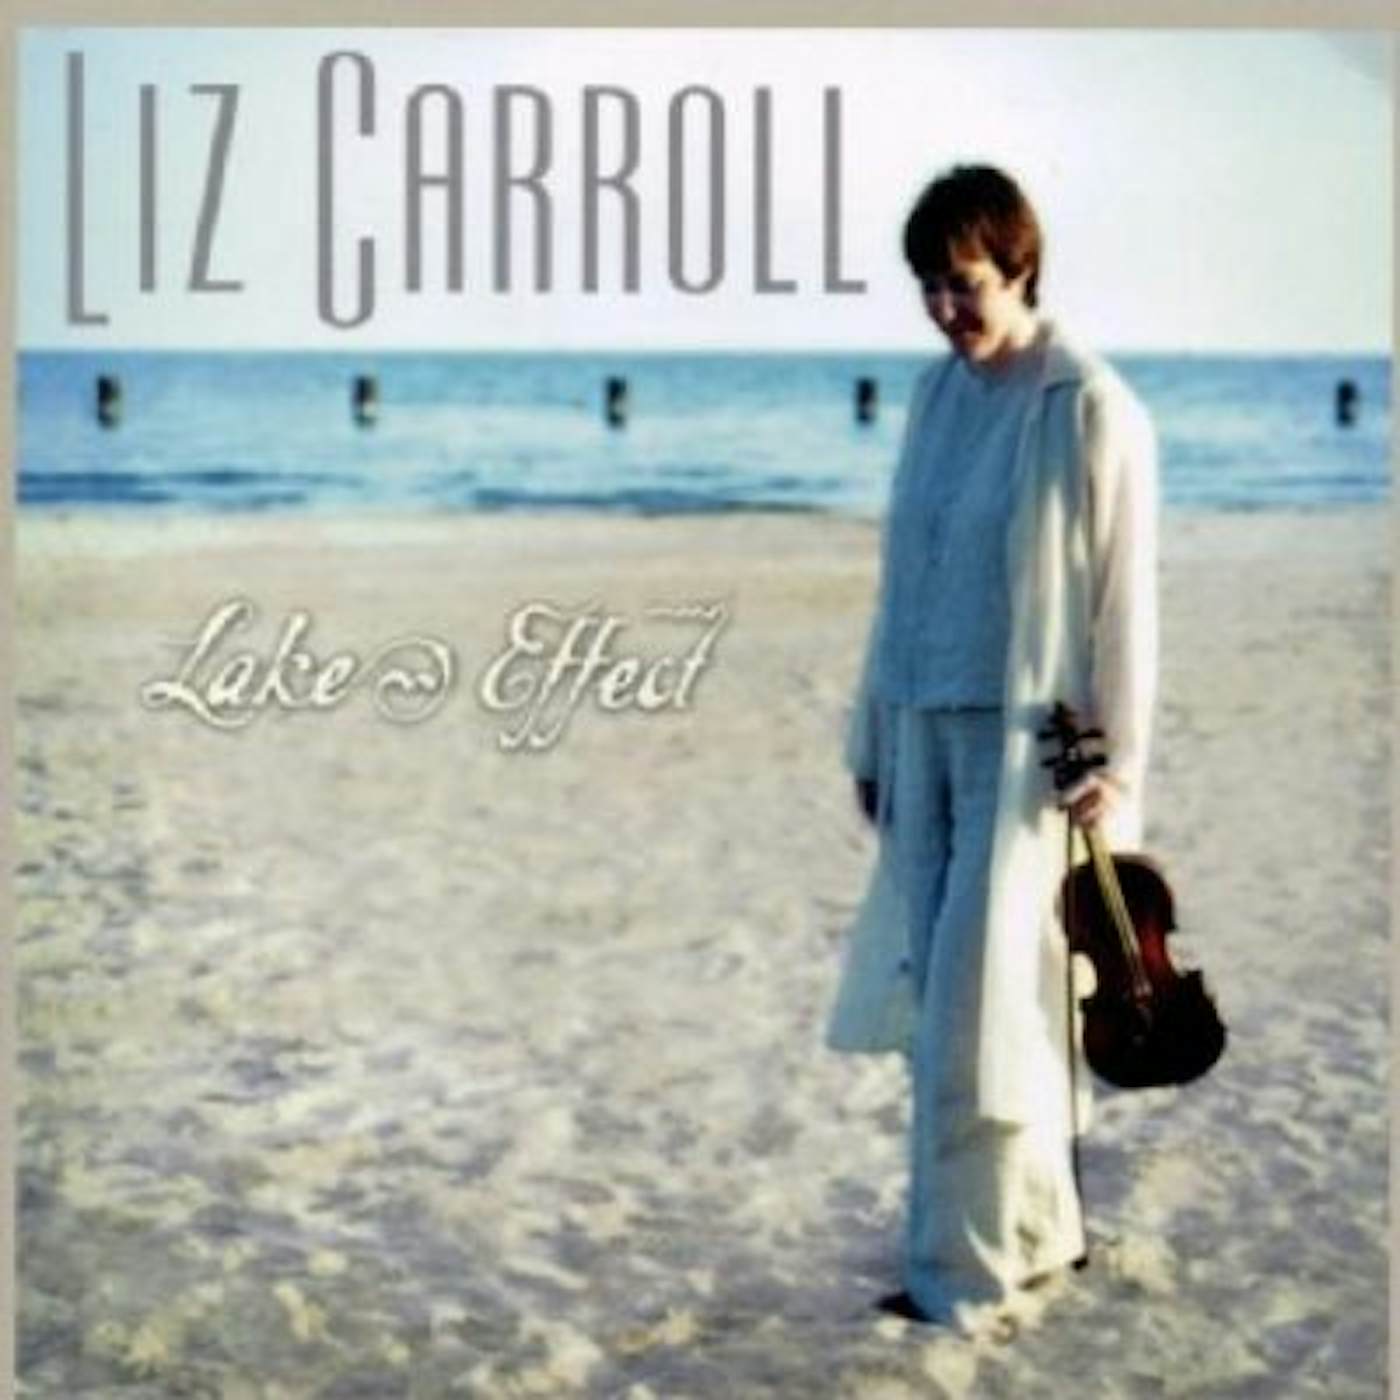 Liz Carroll LAKE EFFECT CD